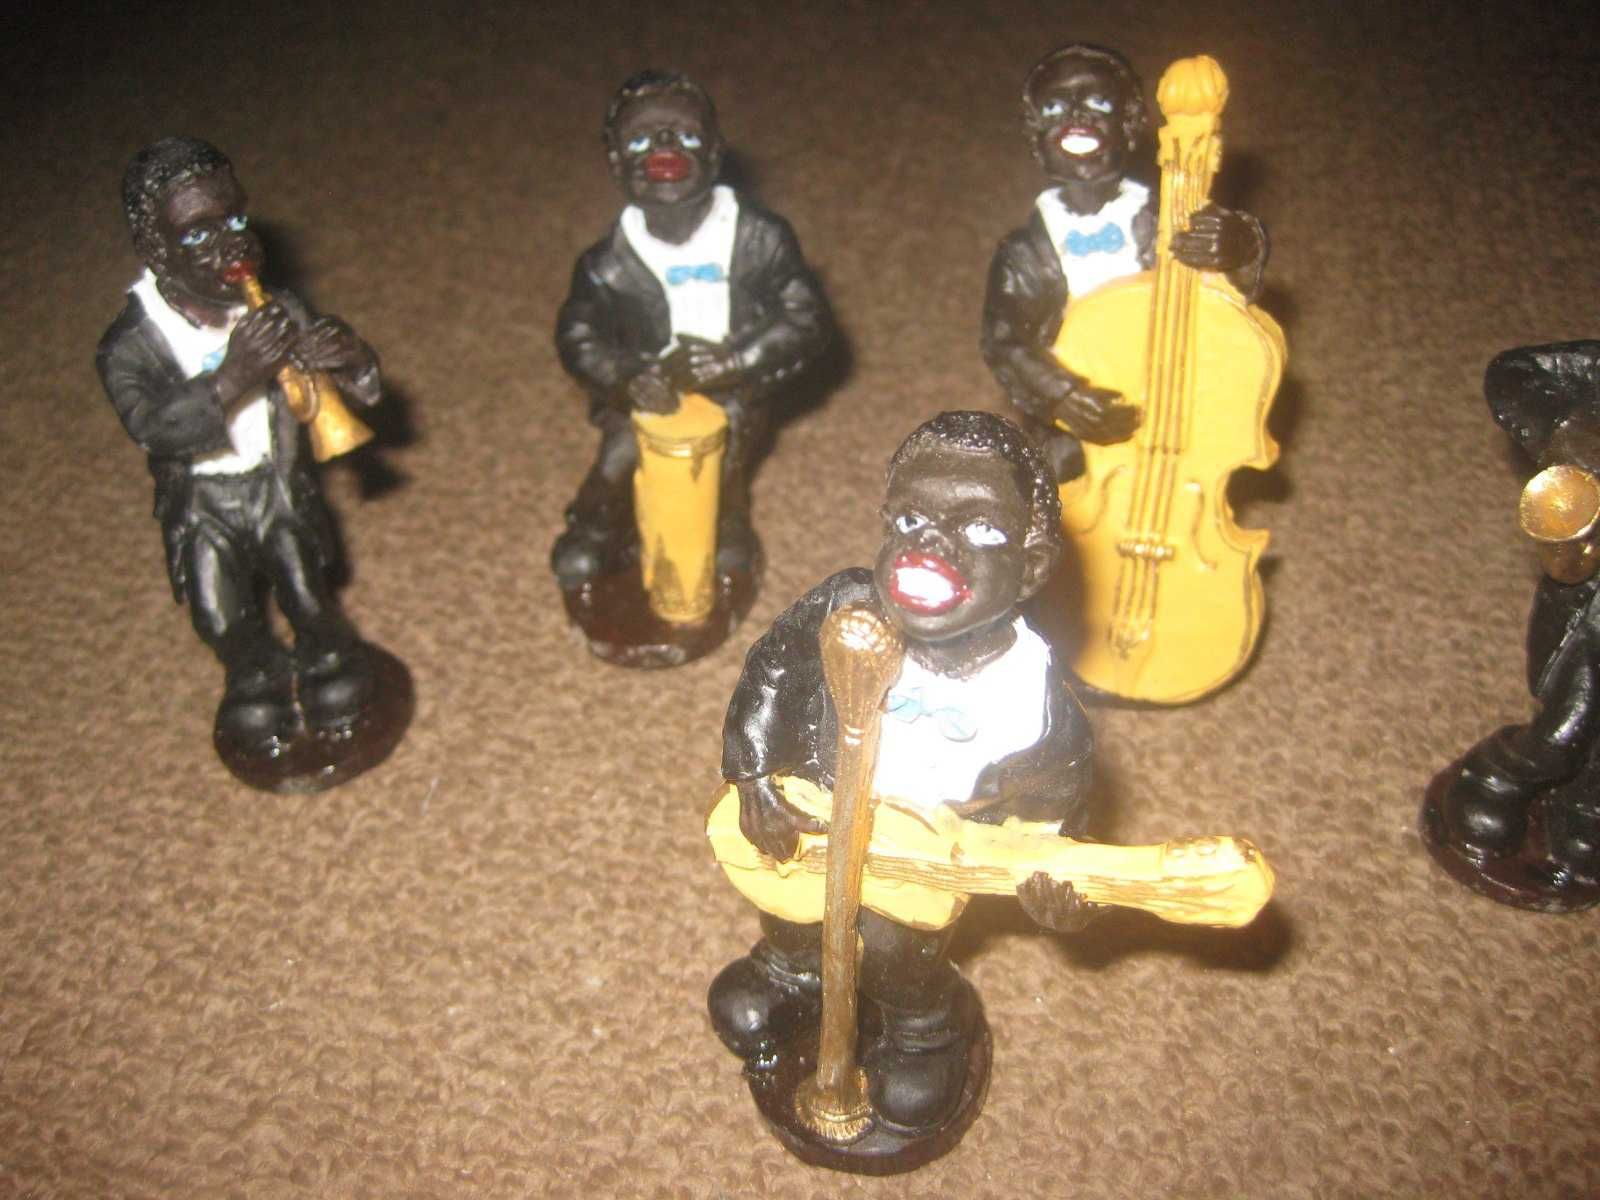 Colecção Completa de 6 Figuras "A Banda" de Jazz